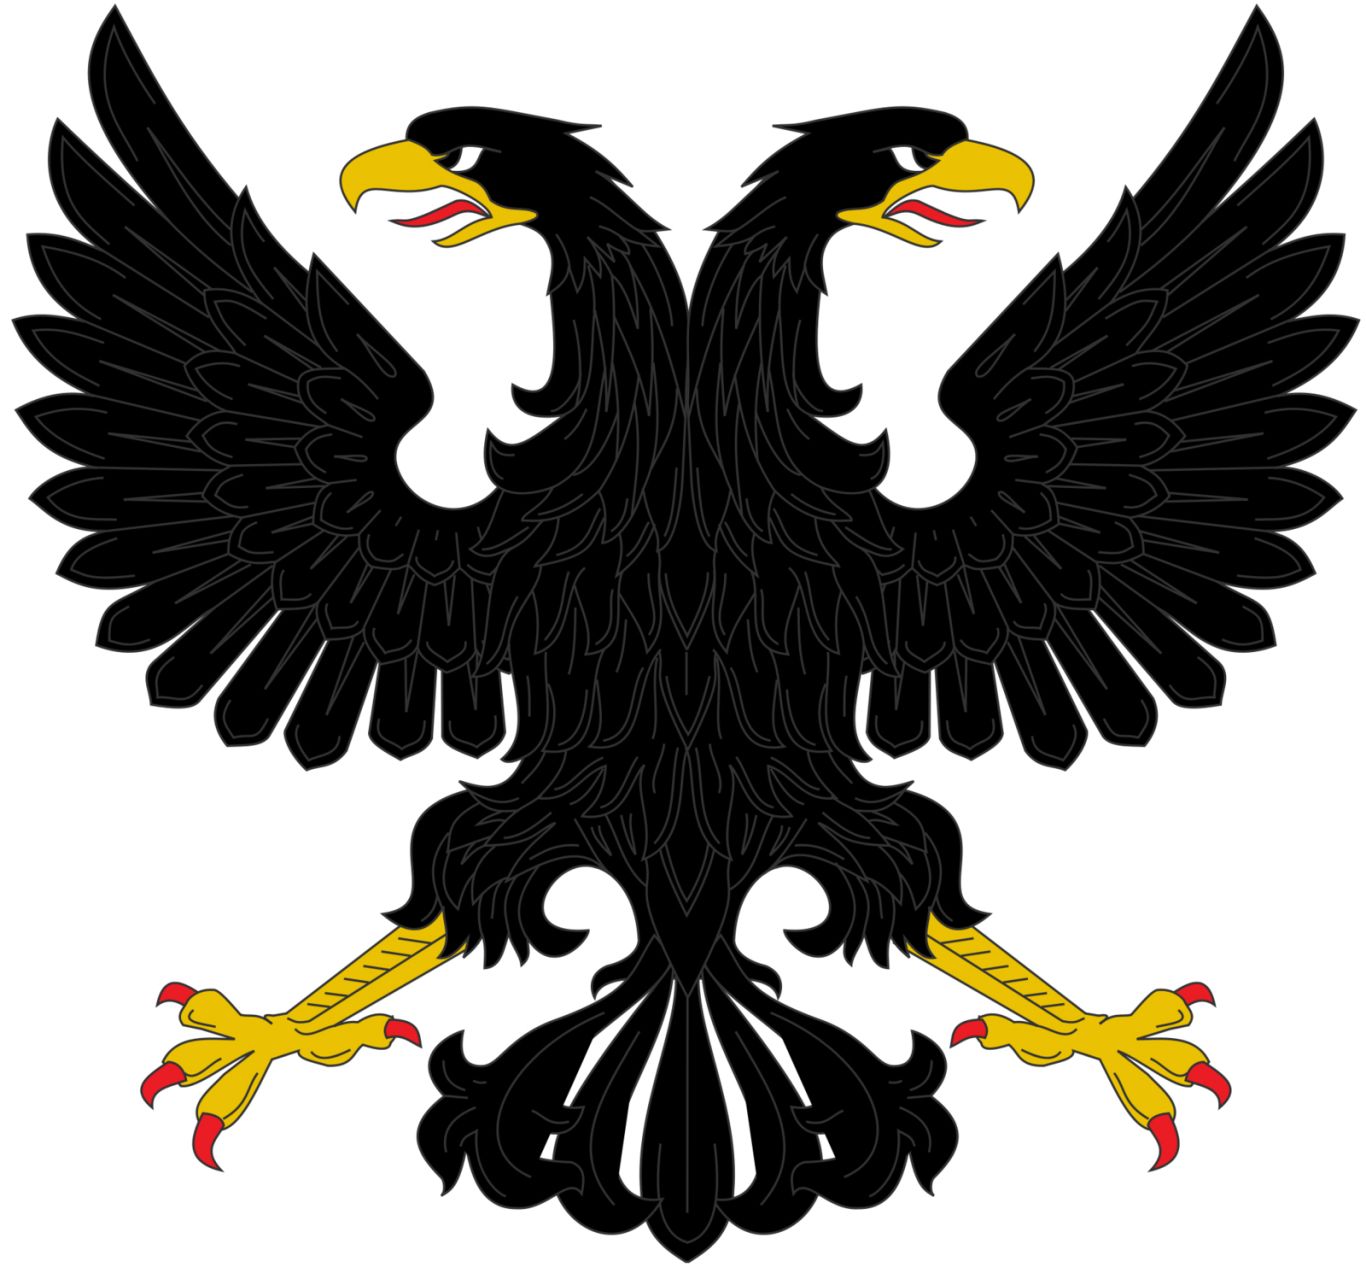 Eagle black logo PNG image, free download    图片编号:1233